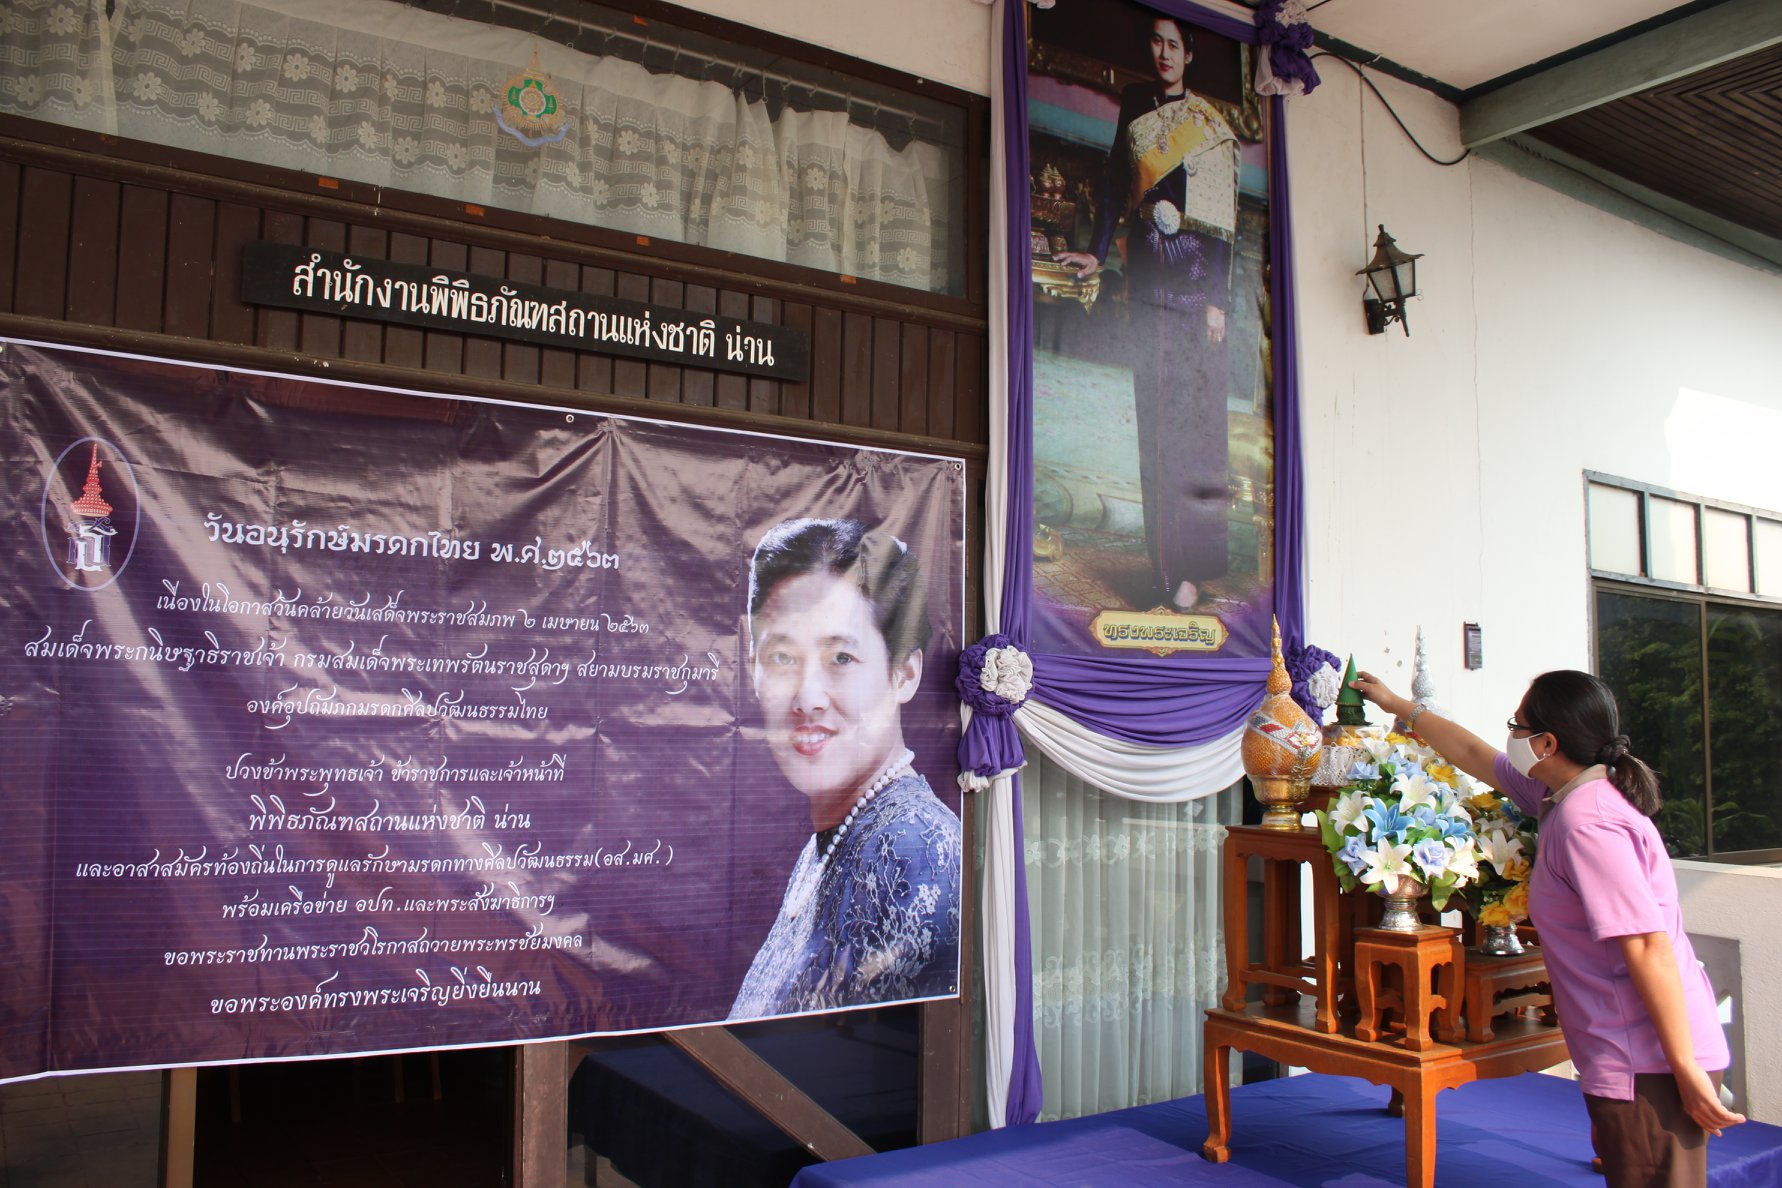 สำนักศิลปากรที่ 7 เชียงใหม่ สาขาน่าน   จัดกิจกรรมรณรงค์การดูแลรักษามรดกทางศิลปวัฒนธรรมของชาติ เนื่องในวันอนุรักษ์มรดกไทย พุทธศักราช 2563